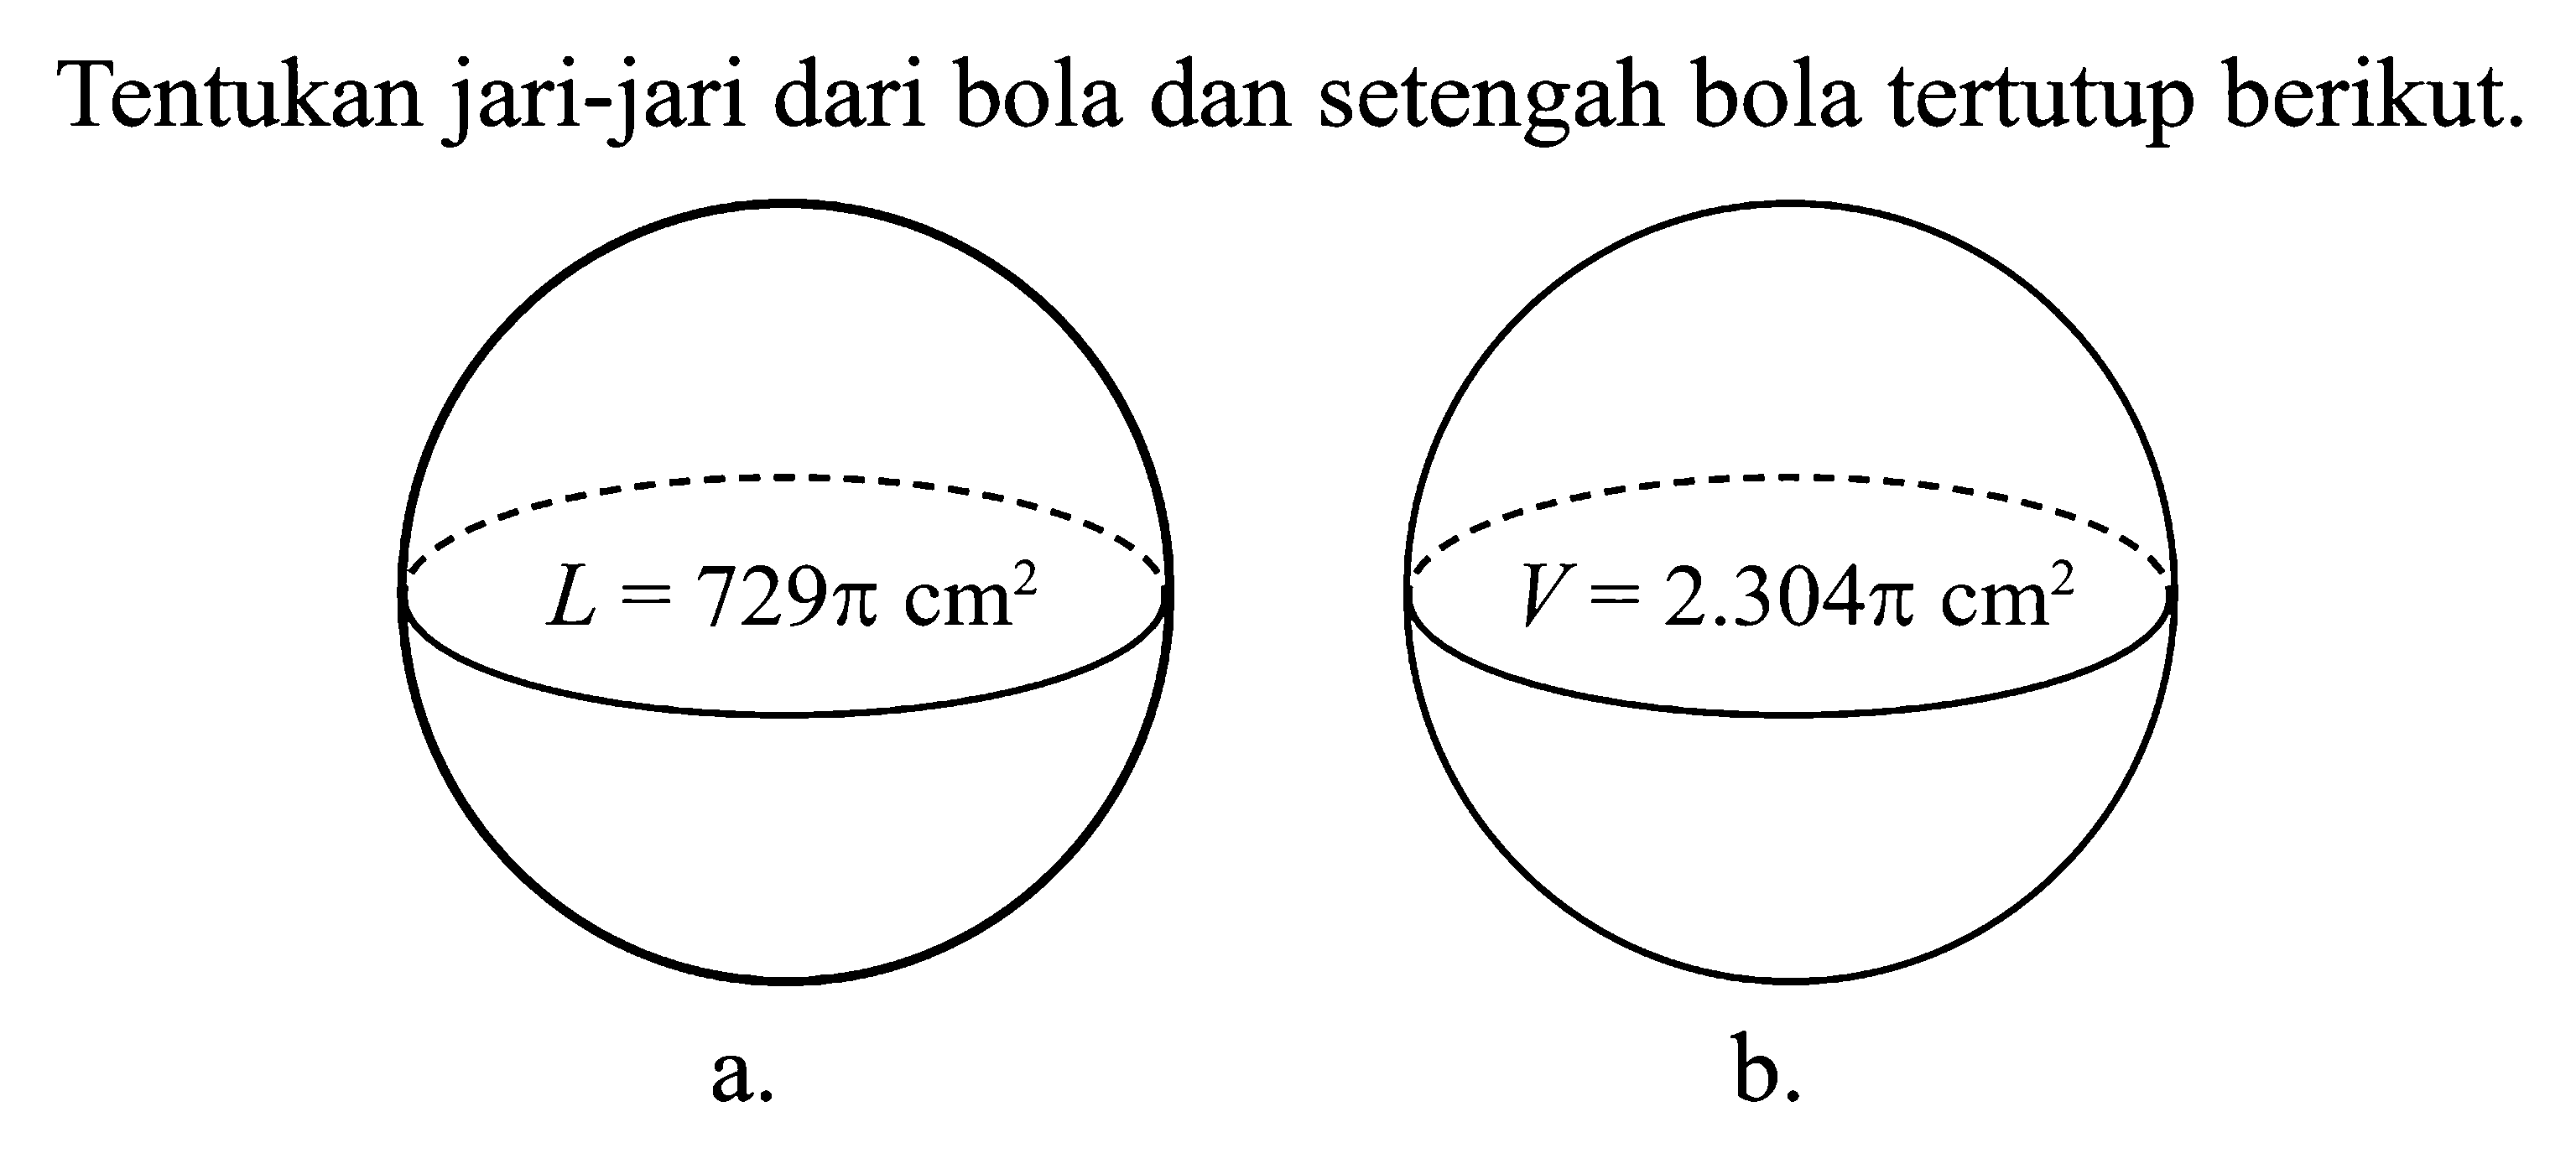 Tentukan jari-jari dari bola dan setengah bola tertutup berikut. a. L = 729pi cm^2 b. V = 2.304pi cm^2